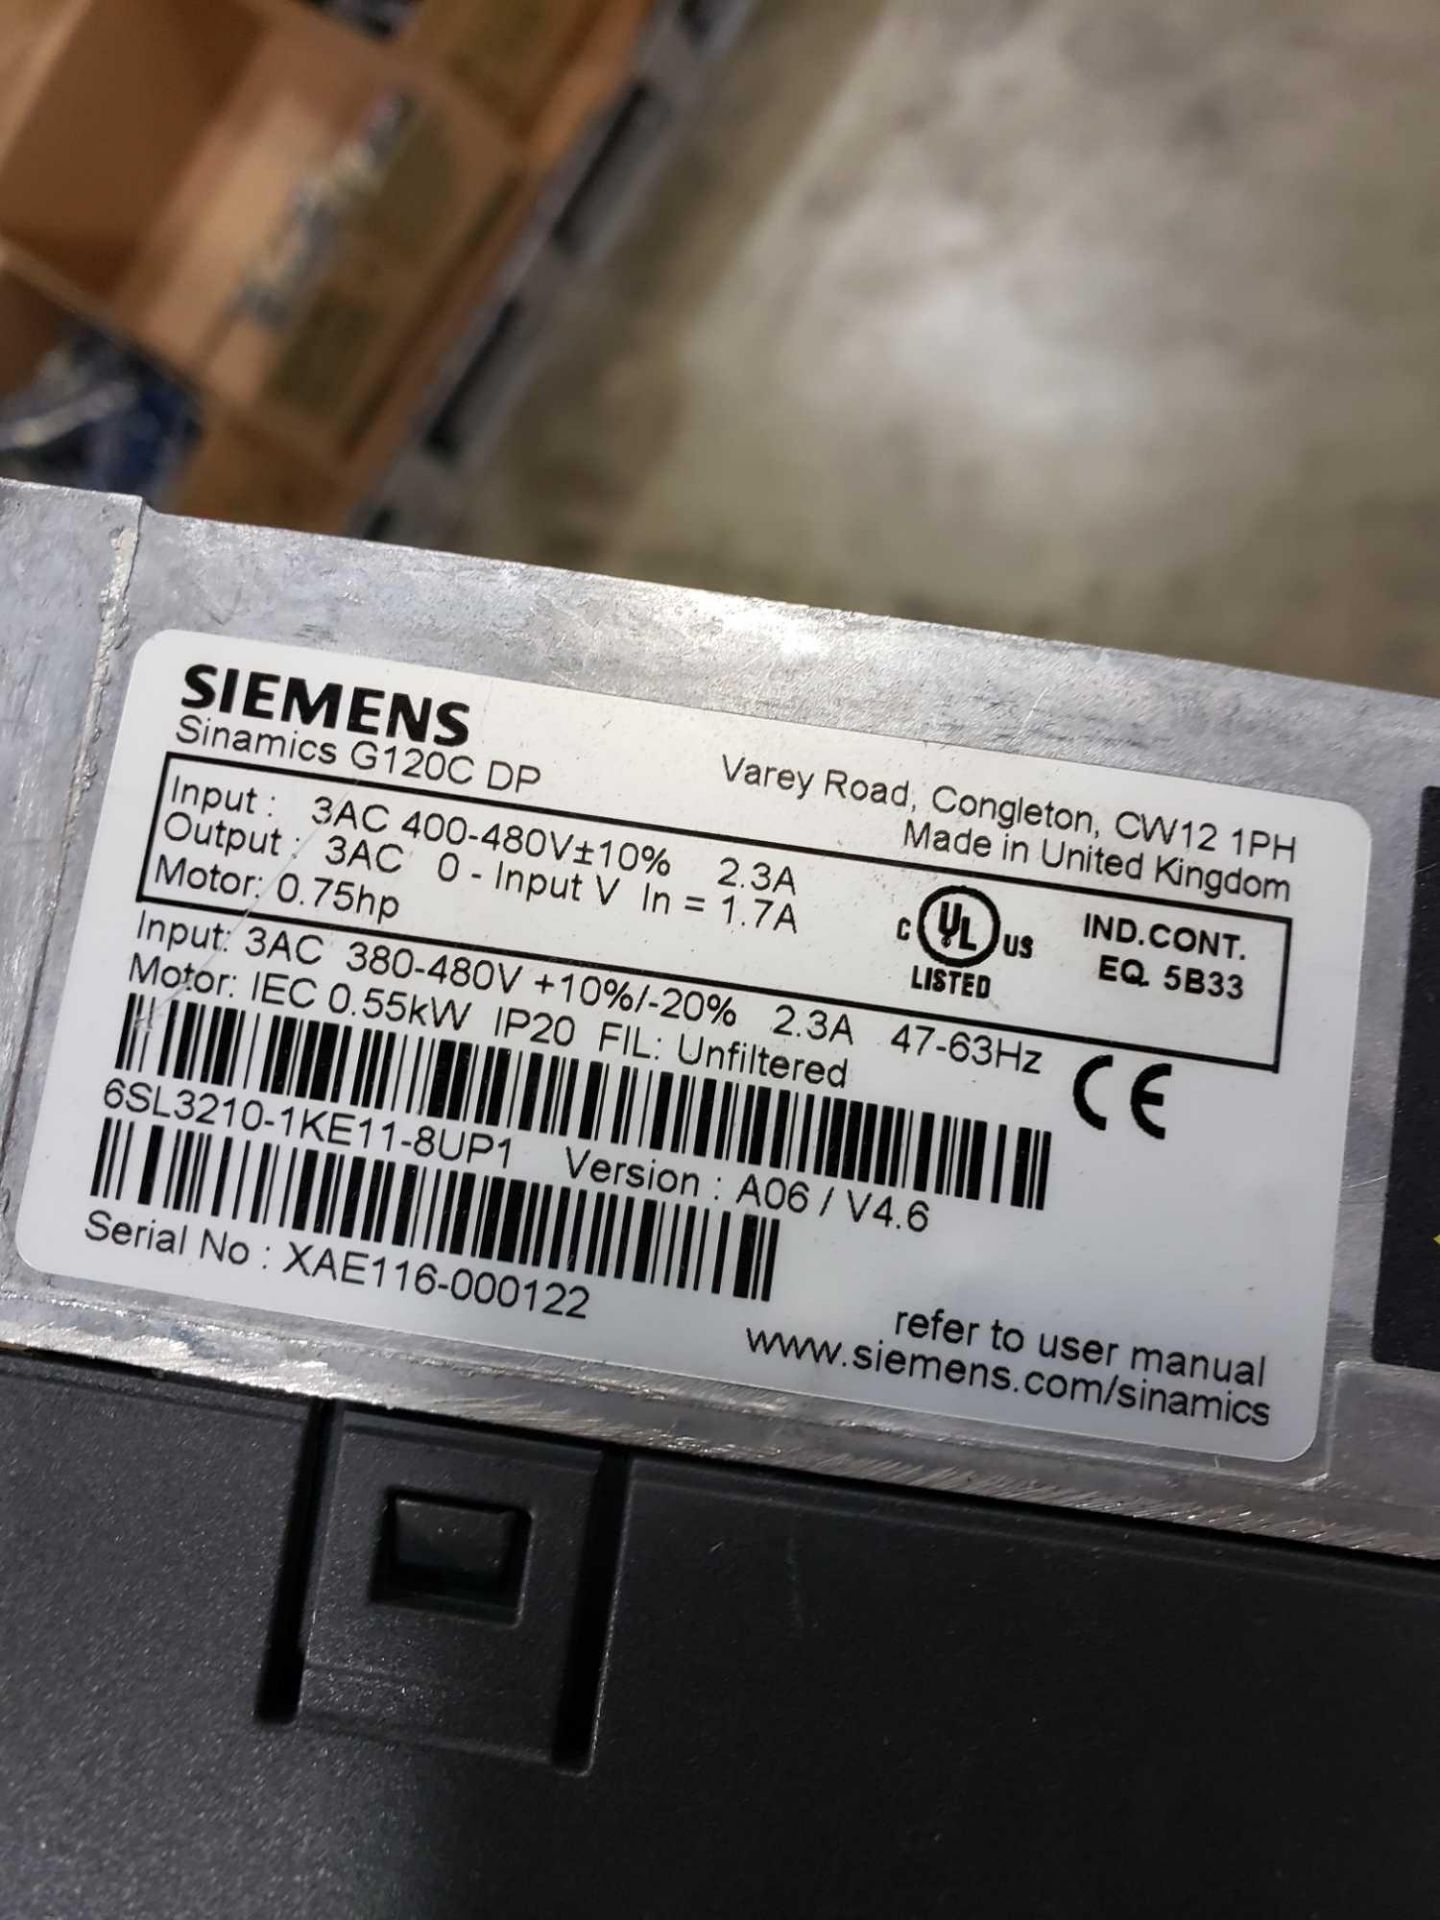 Qty 2 - Siemens Simamics model 6SL3210-1KE11-8UP1. - Image 2 of 2